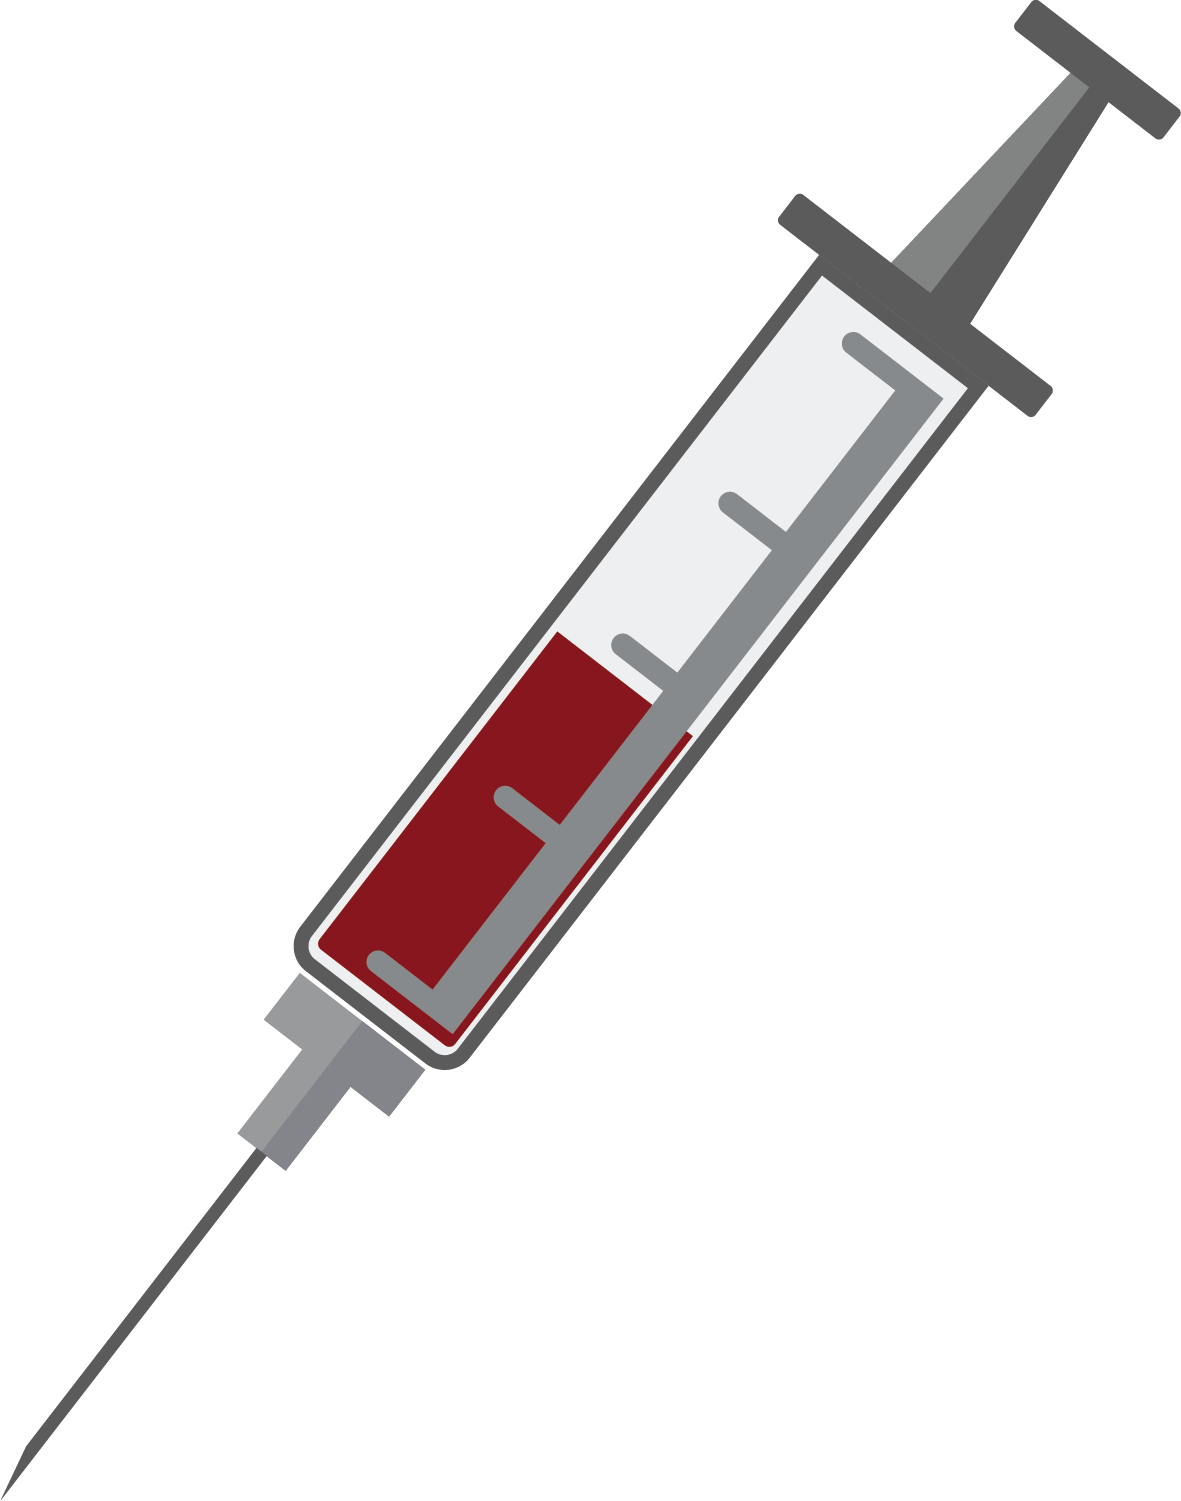 Syringe Needle Background PNG Image